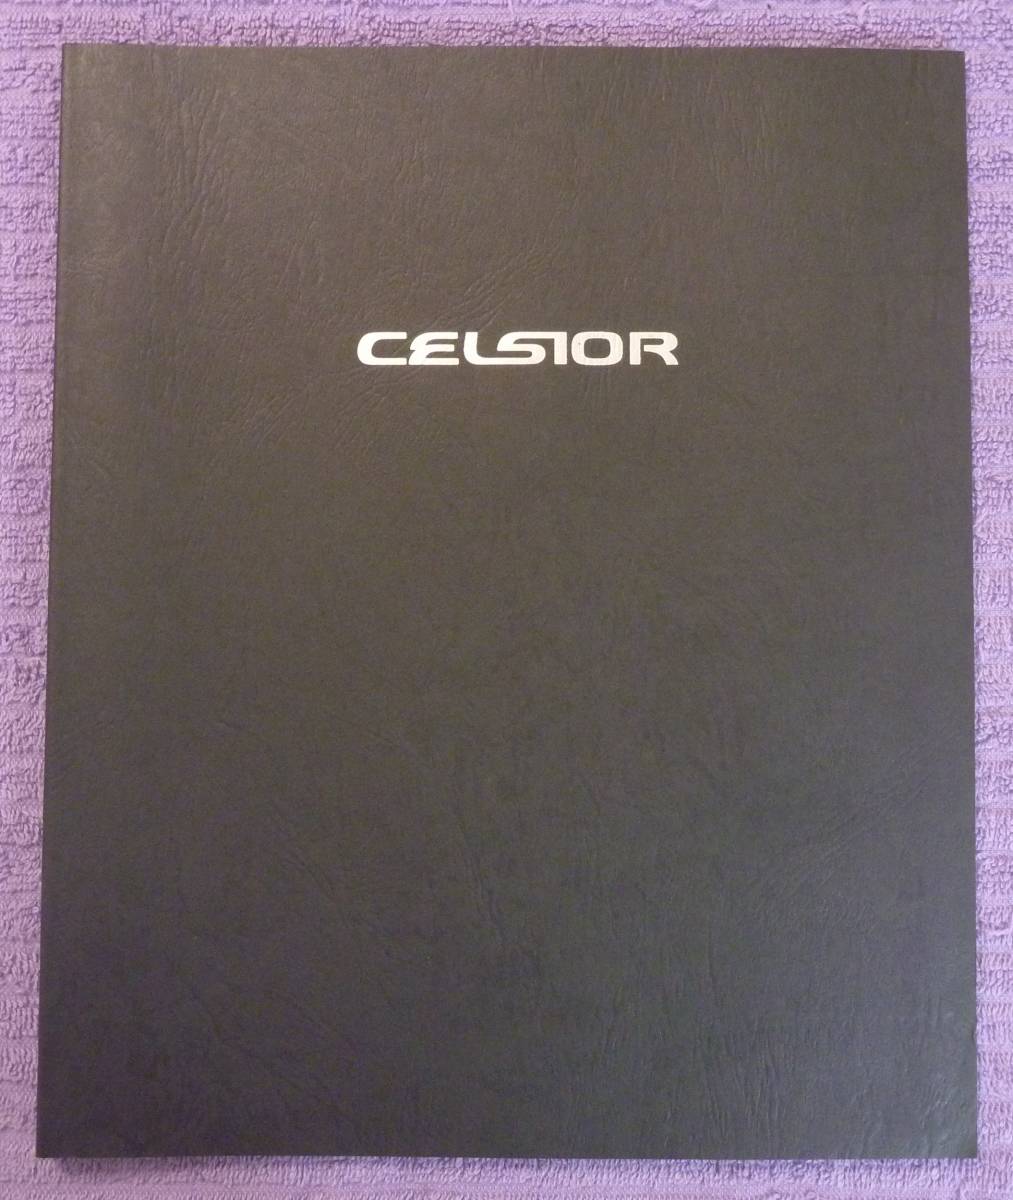 **TOYOTA CELSIOR Celsior каталог 1998.8**